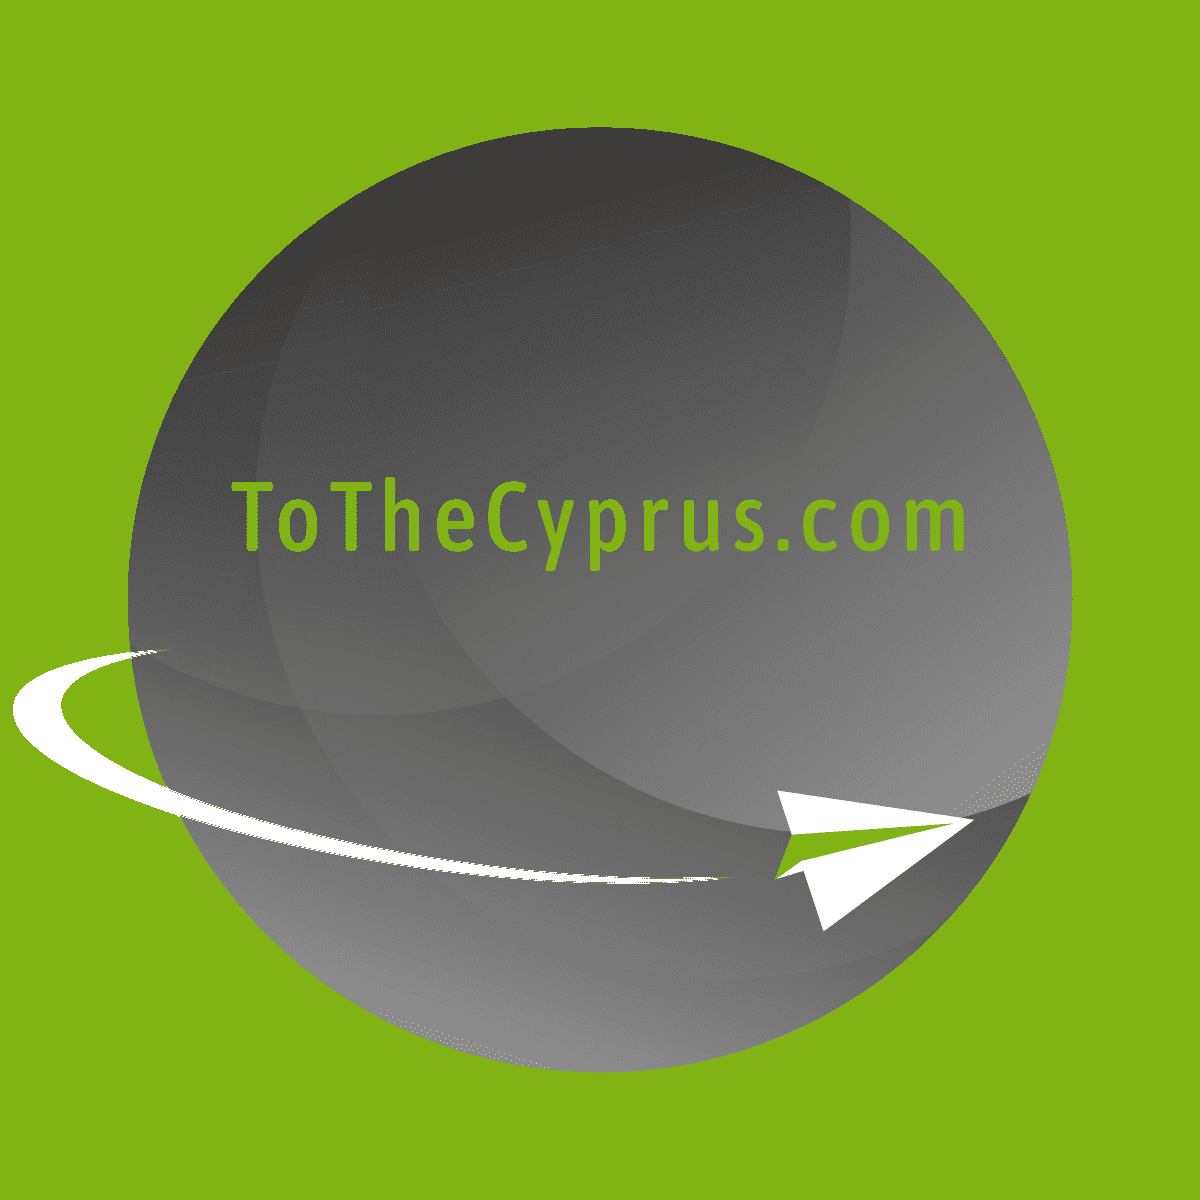 ToTheCyprus.com